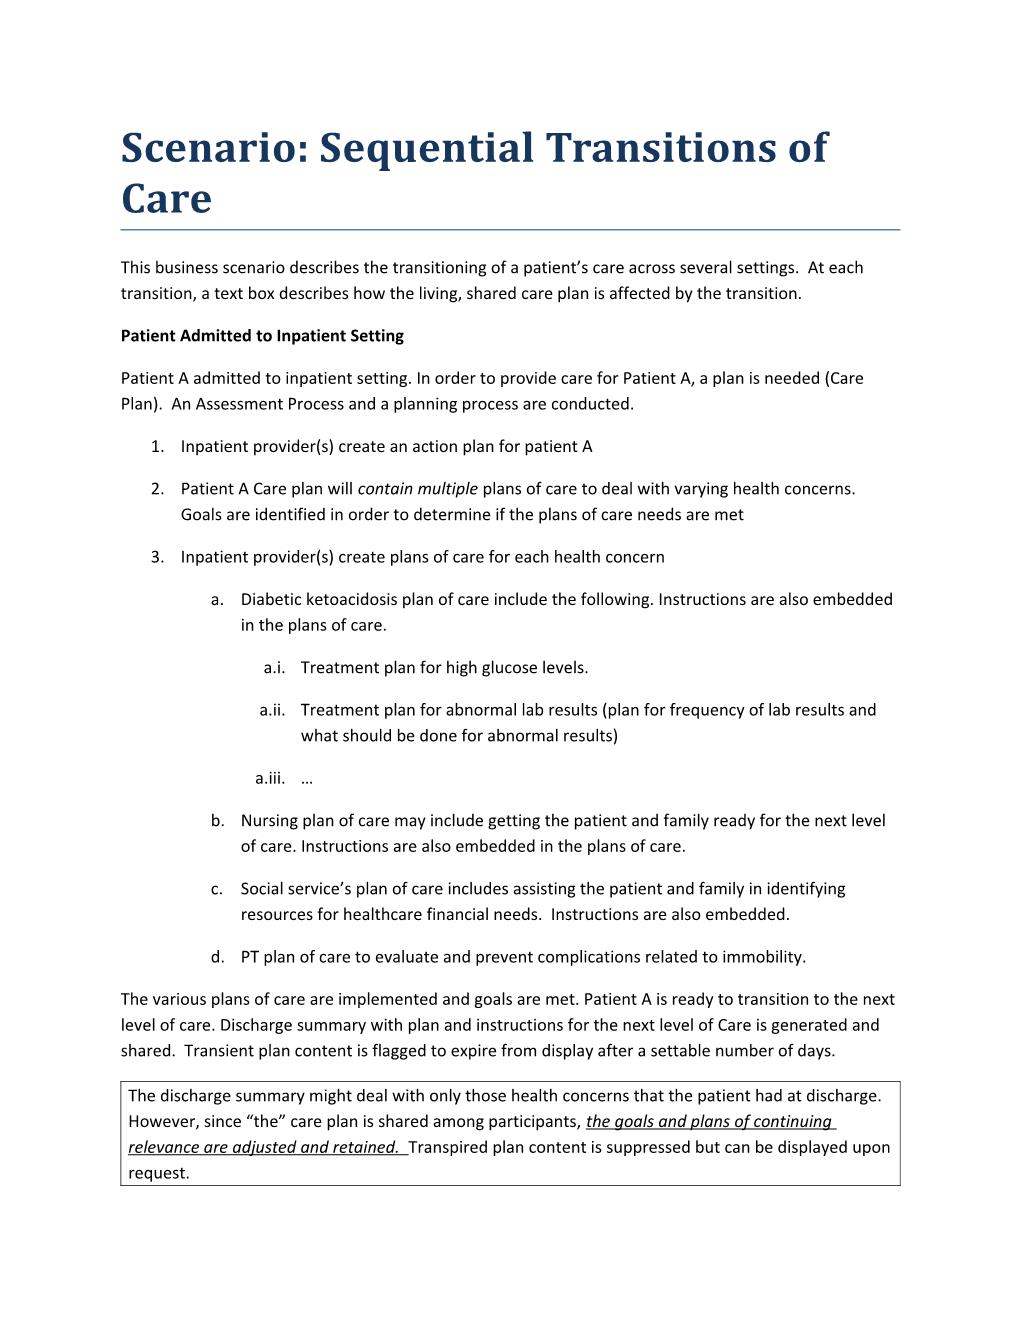 Scenario: Sequential Transitions of Care